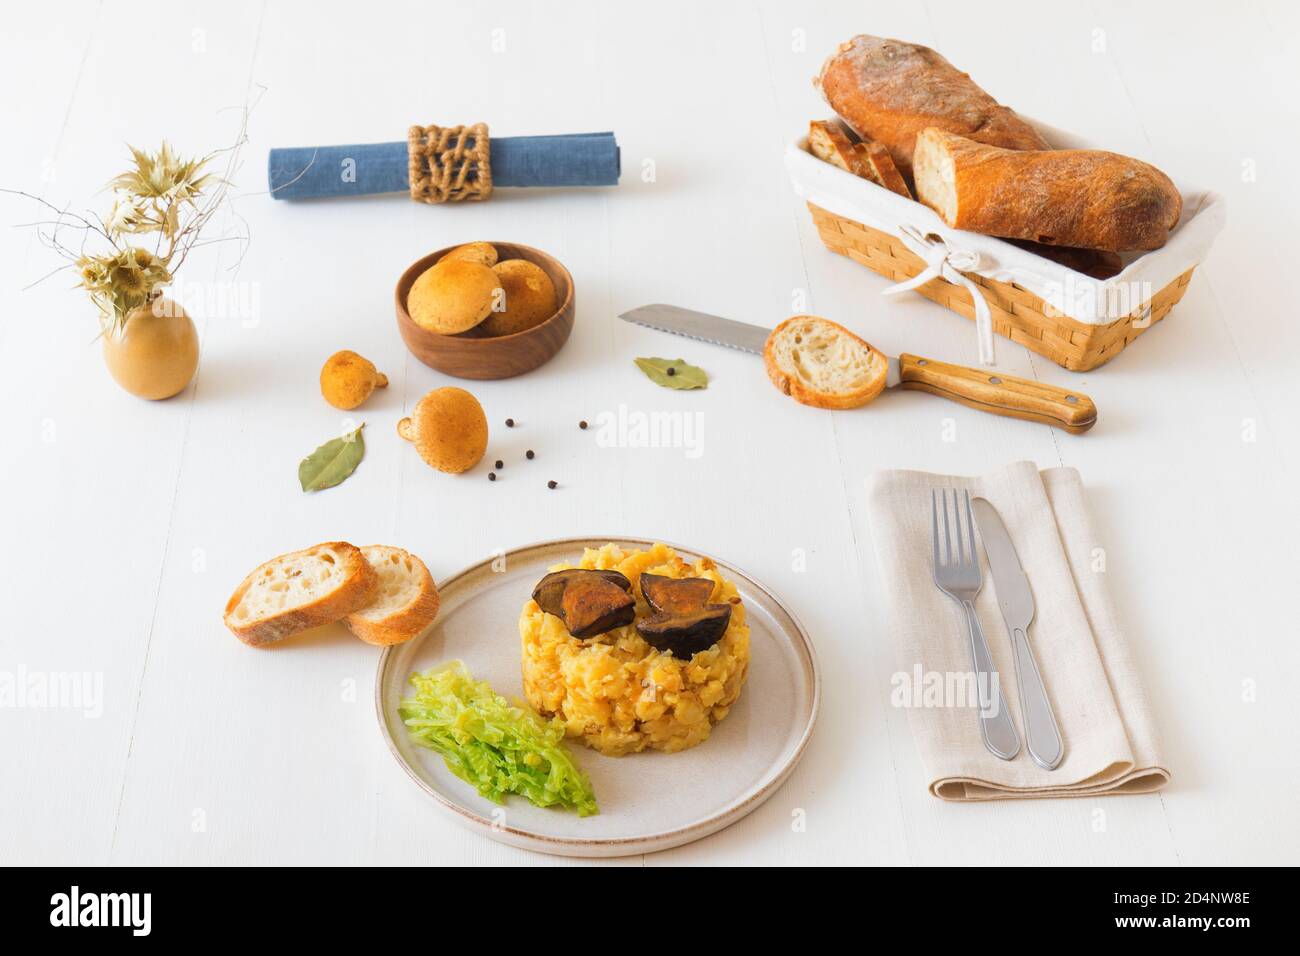 Frisch gerösteter Boletus mit Kartoffelpüree und Grünkohl. Lieblingseason Pilz Mittag-oder Abendessen in der Tschechischen Republik. Stockfoto